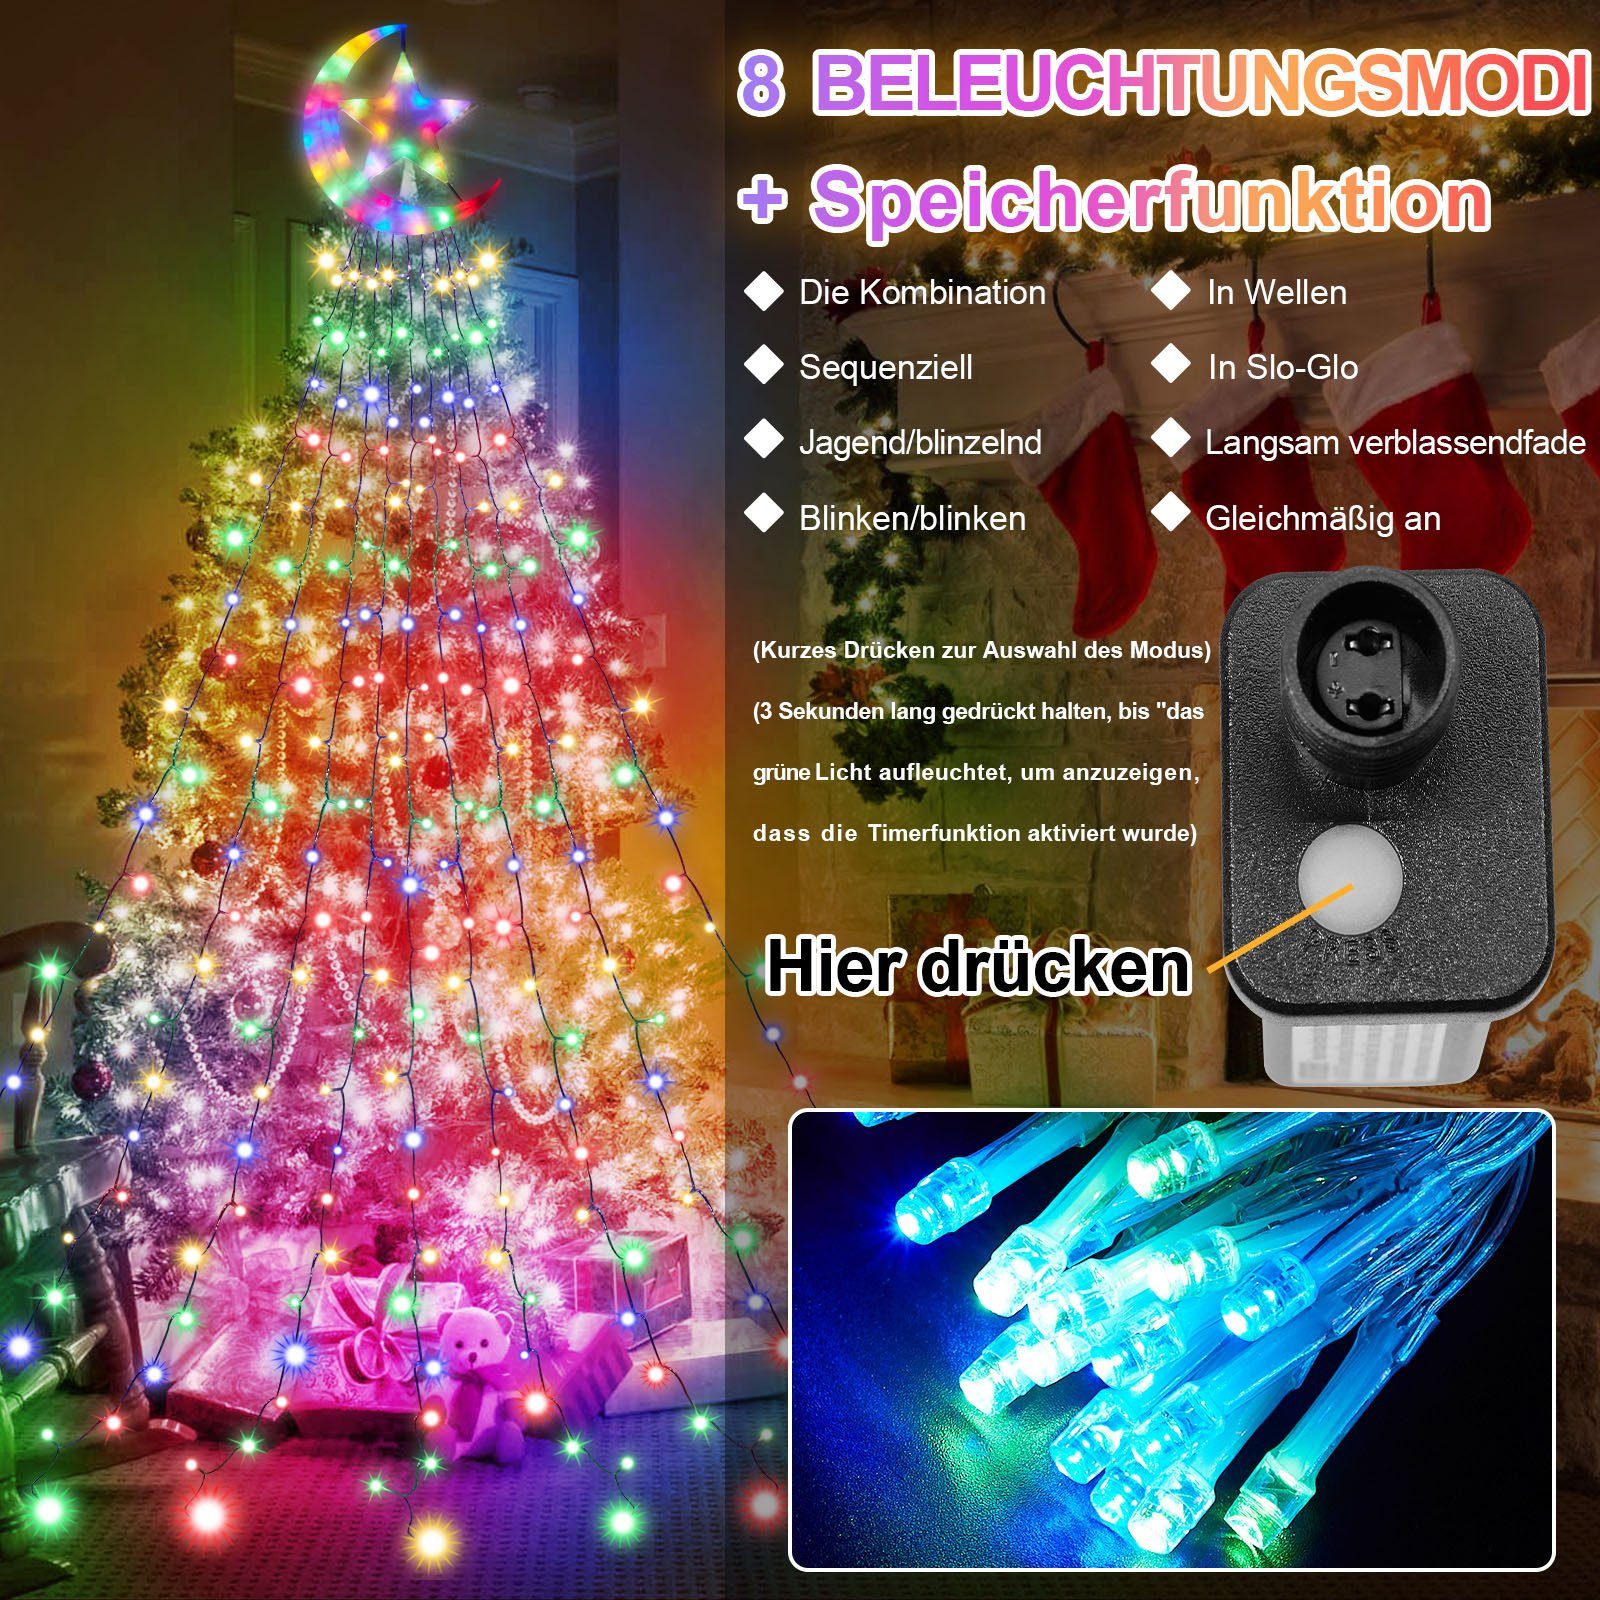 IP44 Memory LED-Lichtervorhang,Party Mehrfarbig und MUPOO LED-Lichtervorhang Modi & Timer Wasserdicht Lichterkette, Lichterkette,31V,350LED Funktion,8